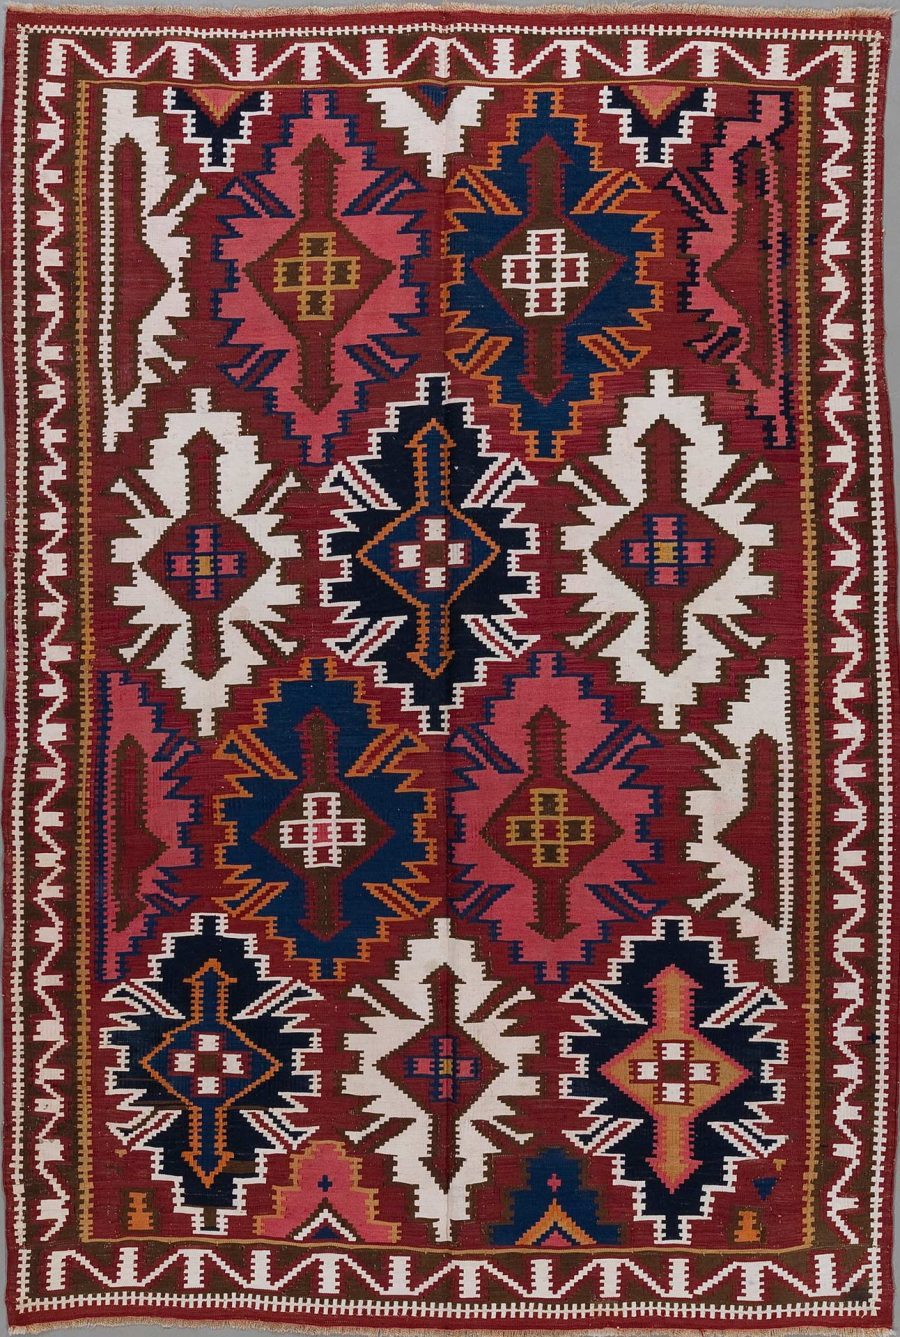 Traditioneller handgewebter Teppich mit komplexem geometrischem Muster in Farben wie Dunkelrot, Blau, Beige und Weiß. Er zeigt symmetrische Anordnungen von Medaillons, Sternen und Zickzacklinien, die von einer Grenze mit ähnlichen Motiven umrahmt sind.